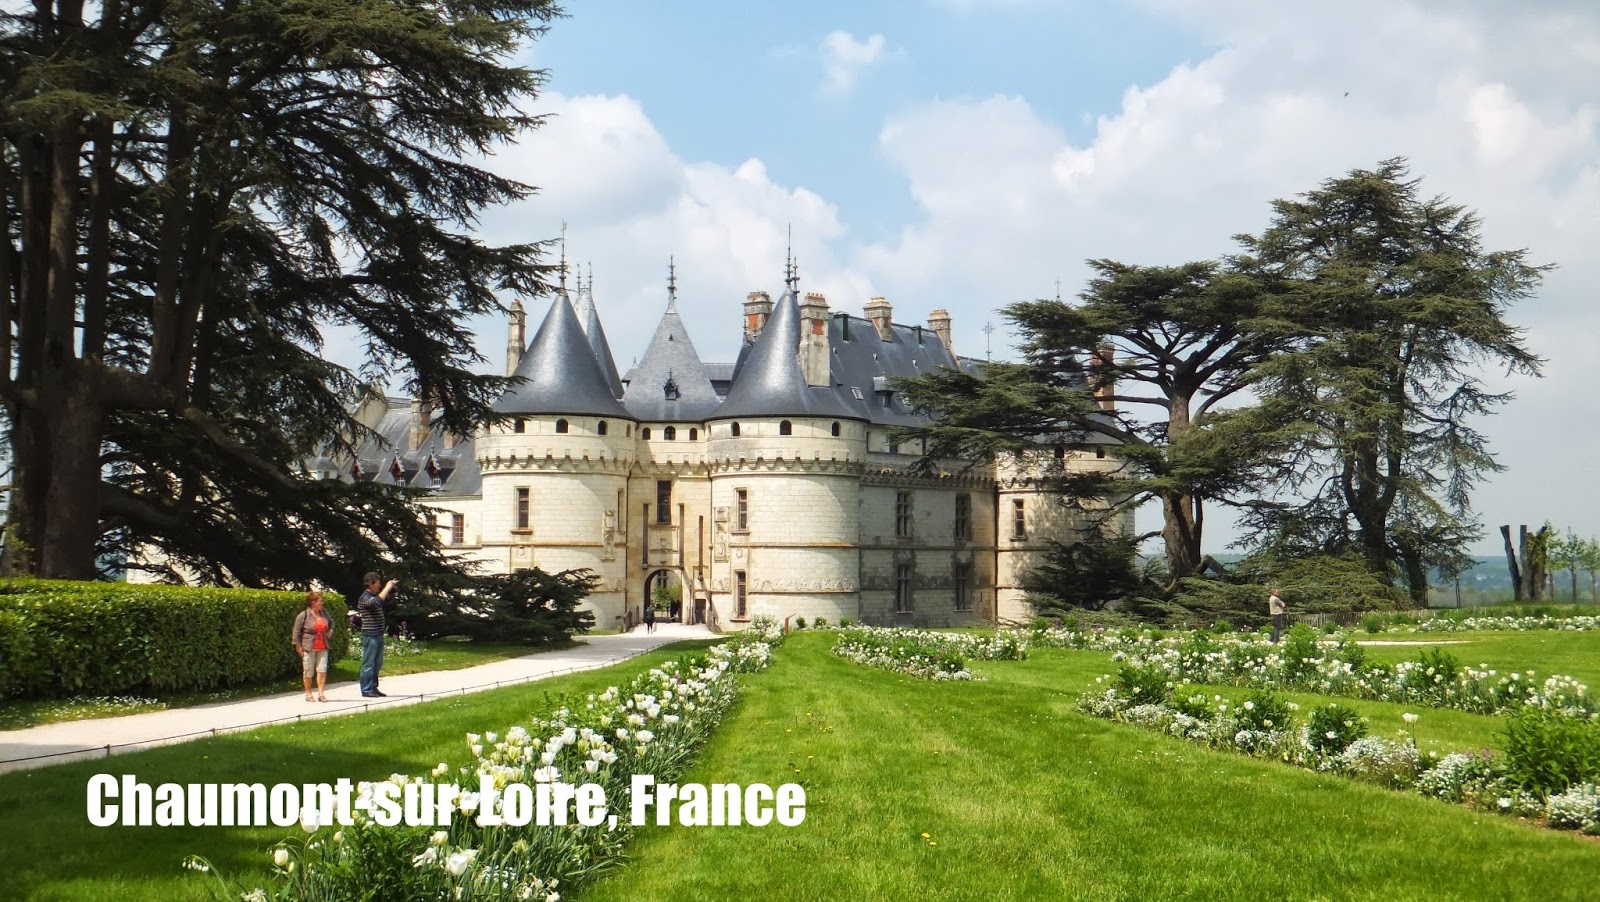 Chaumont-sur-Loire, Jardines, Domaine, Loira, Francia, Elisa N, Blog de Viajes, Lifestyle, Travel